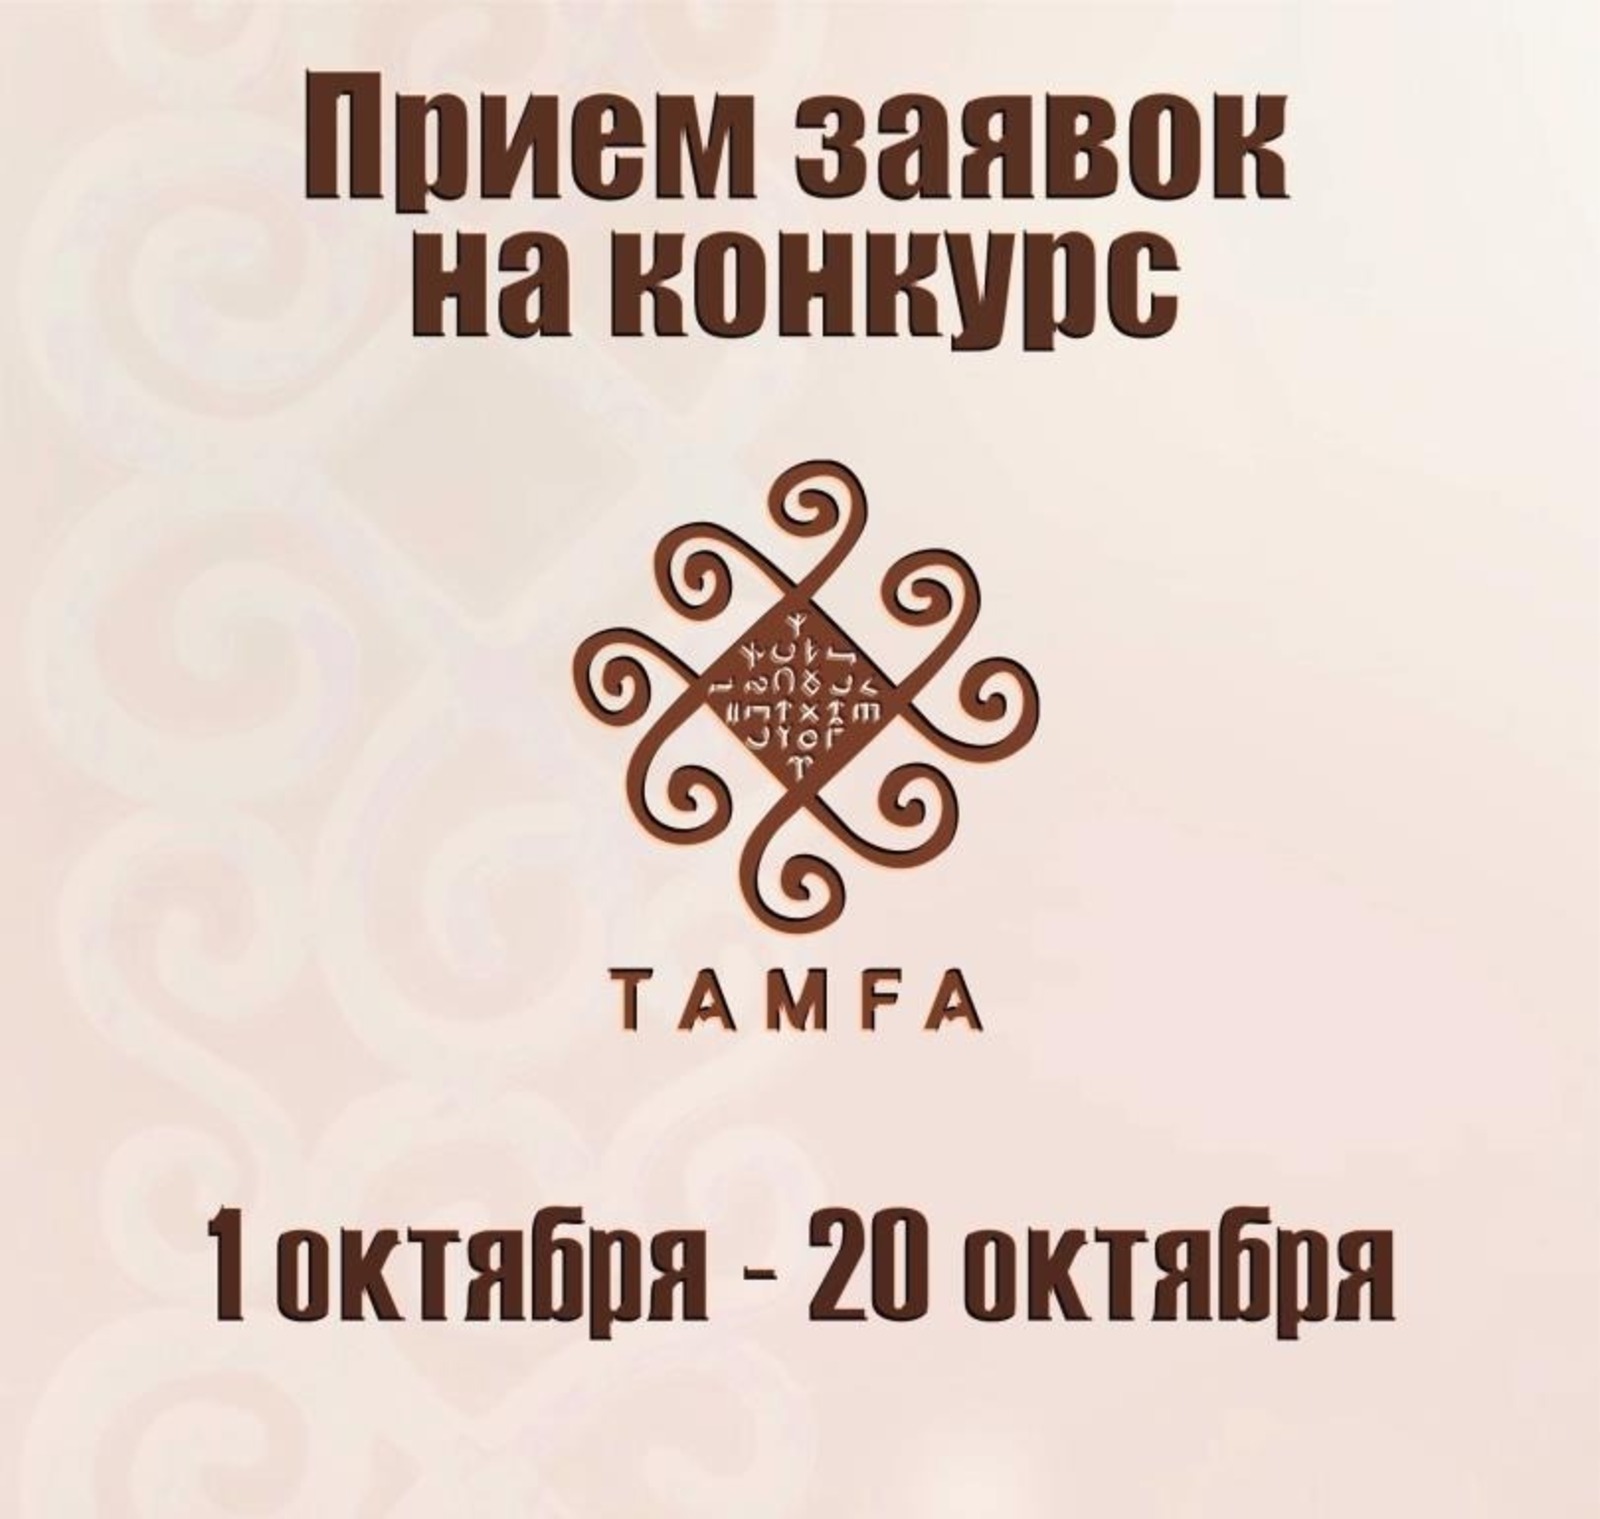 1 октября стартует прием заявок на конкурс "Тамга"